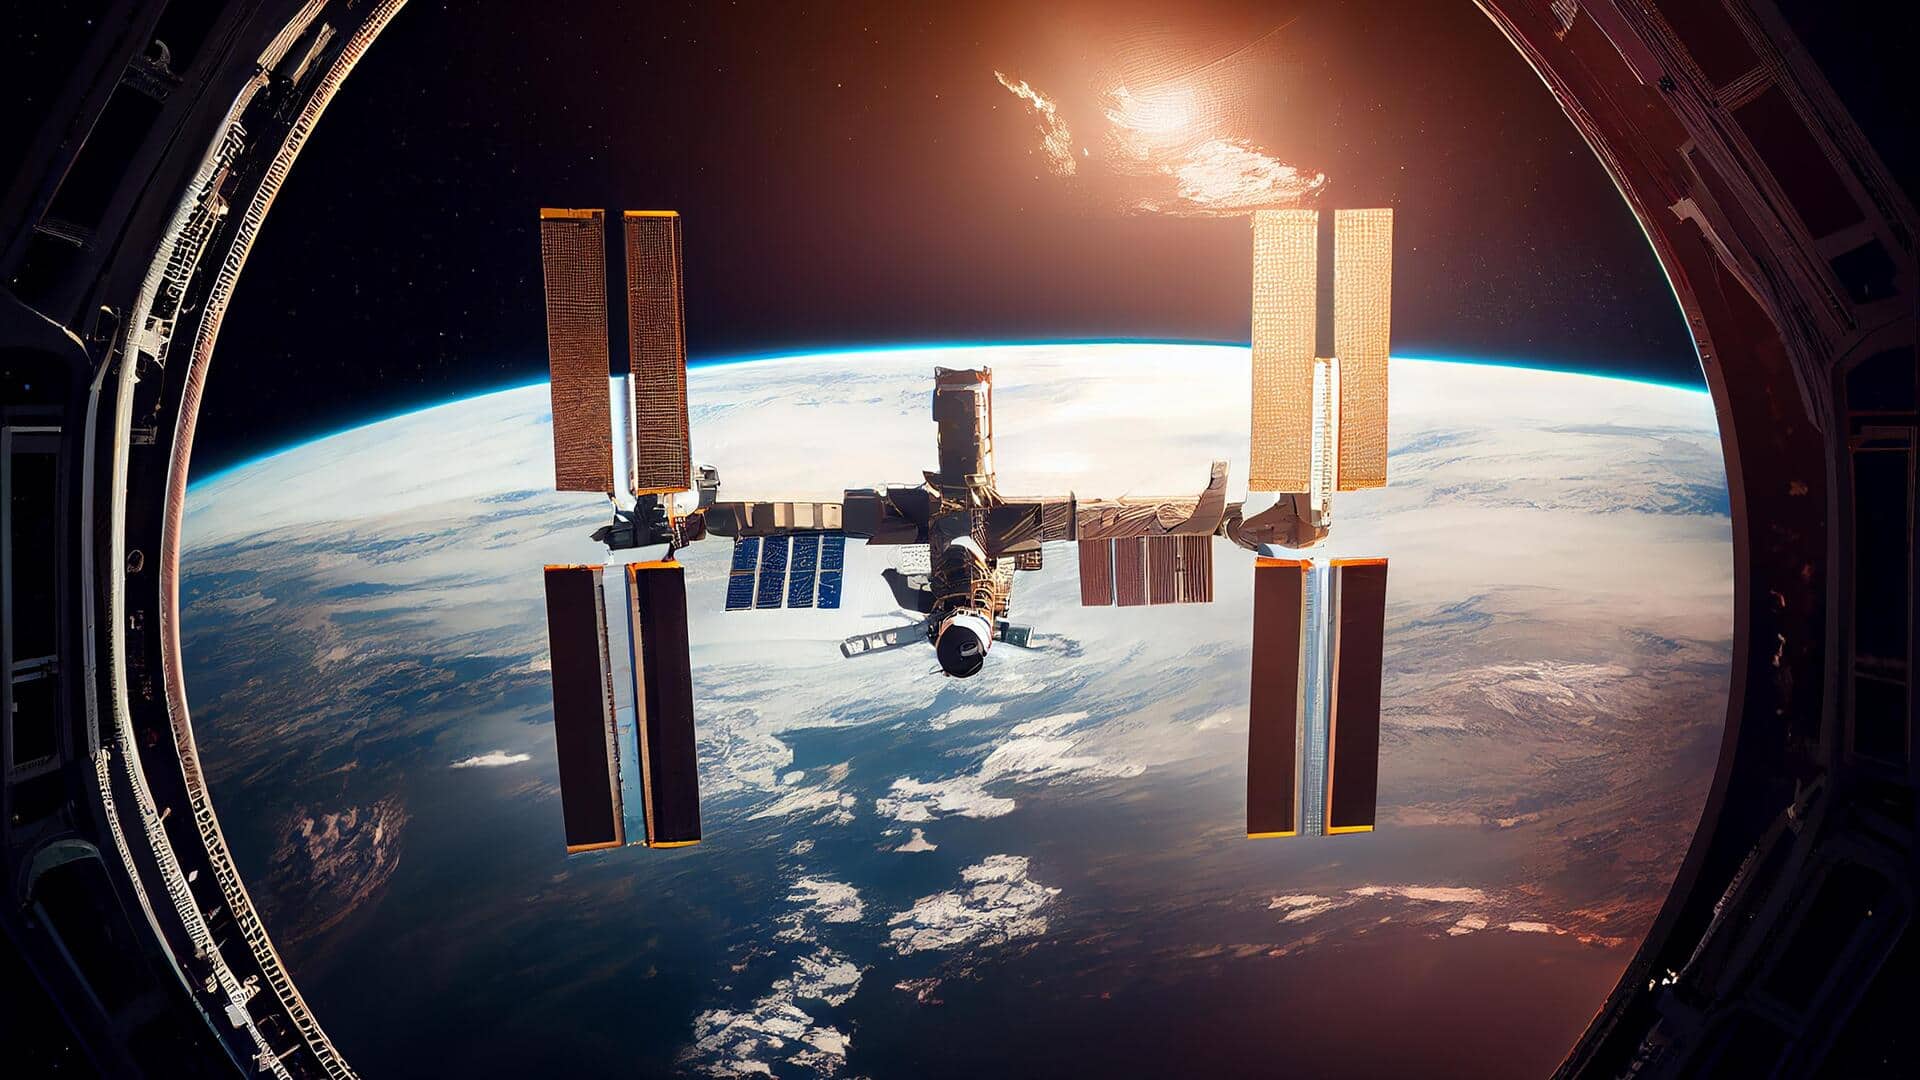 2030 में अंतरराष्ट्रीय स्पेस स्टेशन हो जायेगा रिटायर, नासा की क्या है योजना?